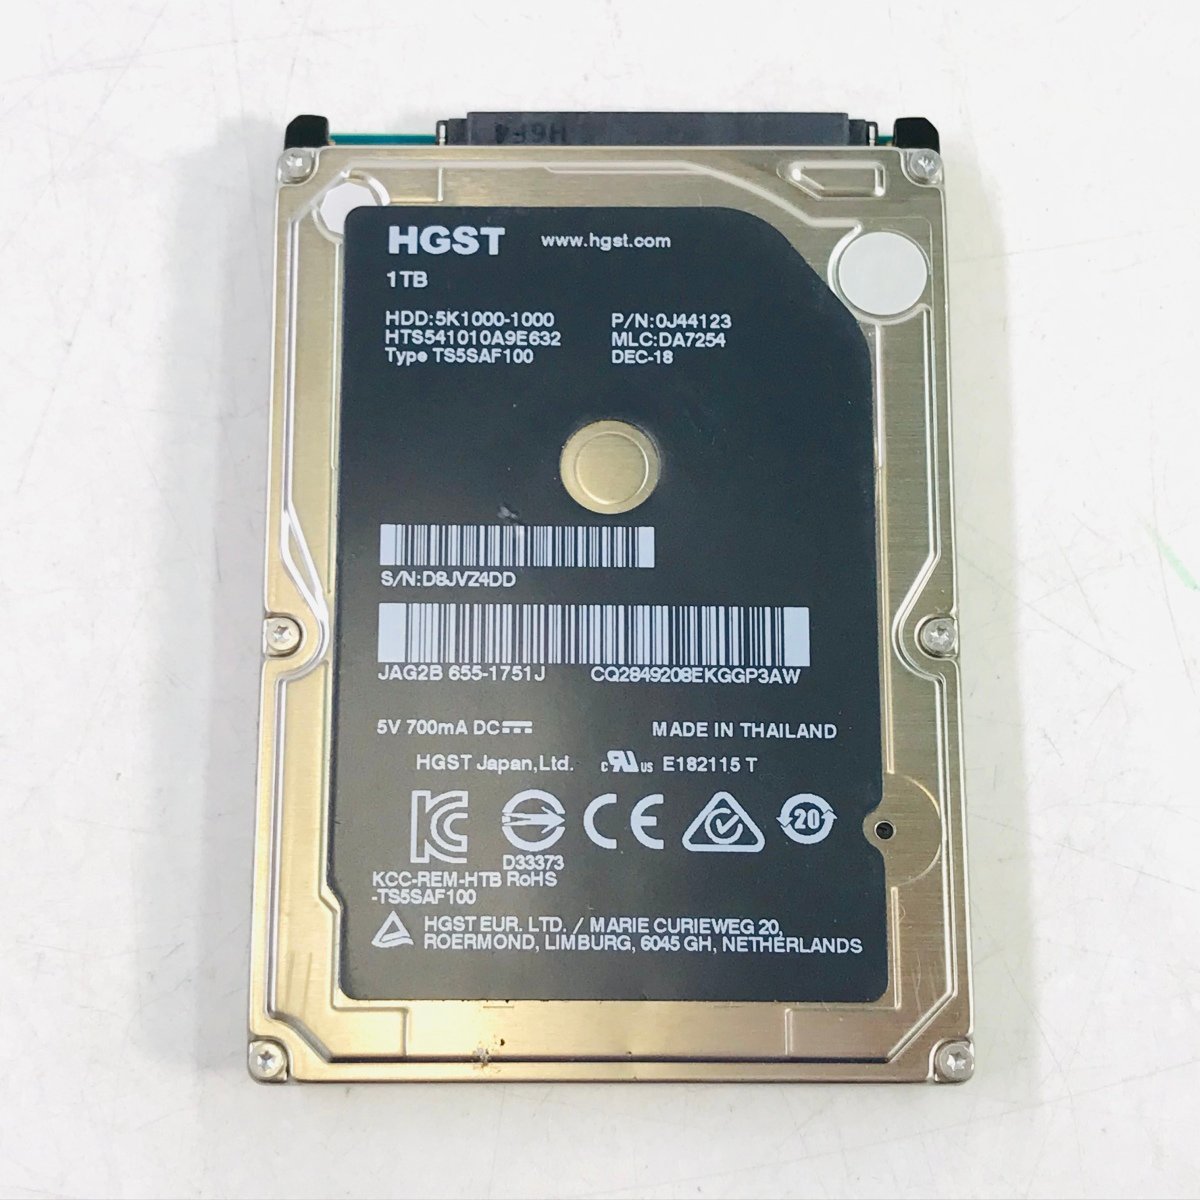 動作確認済み 18555時間 APPLE HDD HTS541010A9E632 1000GB 2.5インチ SATA 内蔵 HDD ハードディスクドライブ SMART正常 消去済み_画像1